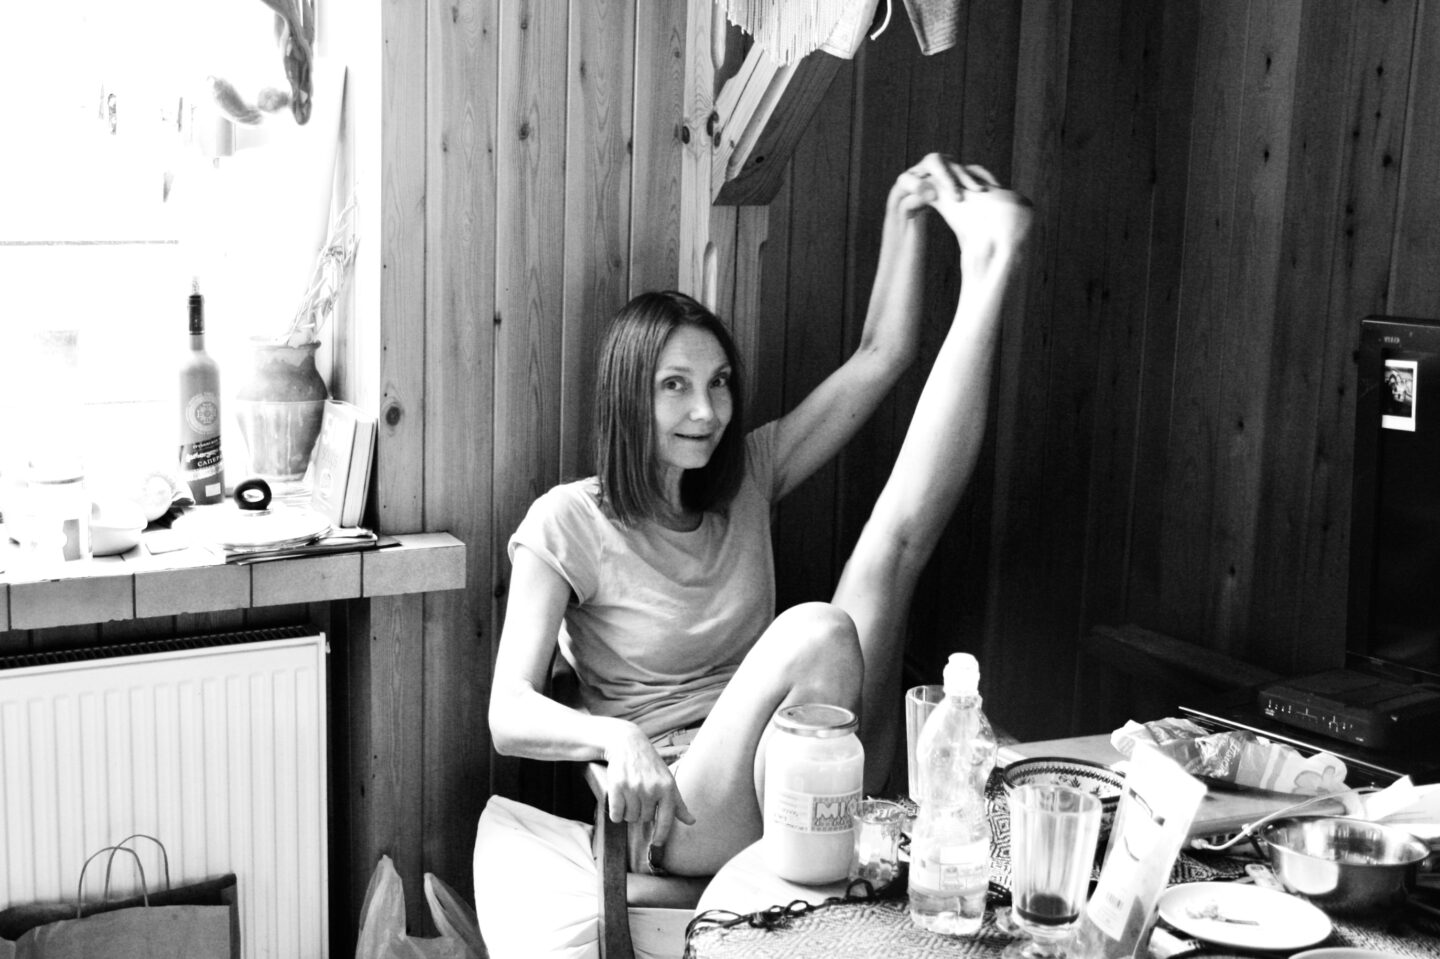 57_Kozyra Katarzyna w kuchni, 2013